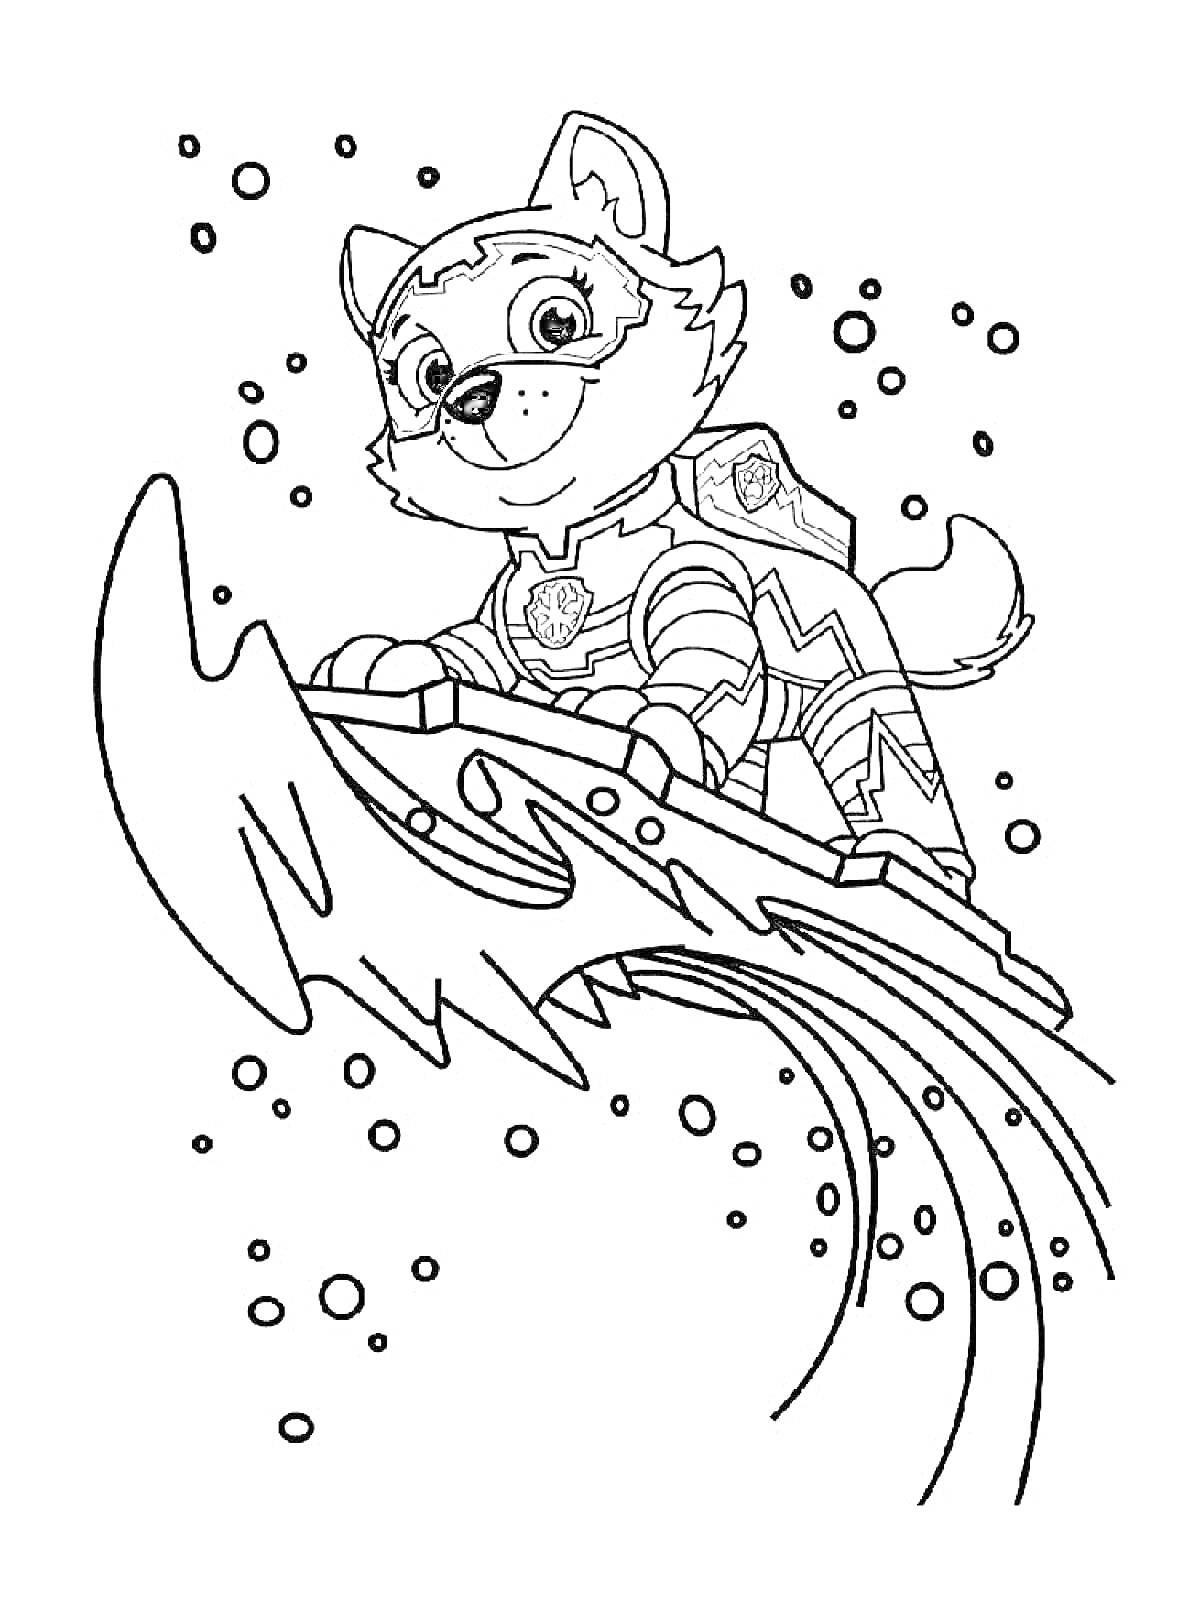 Щенок на доске для серфинга в супергеройском костюме с эмблемой и фон в виде пузырей